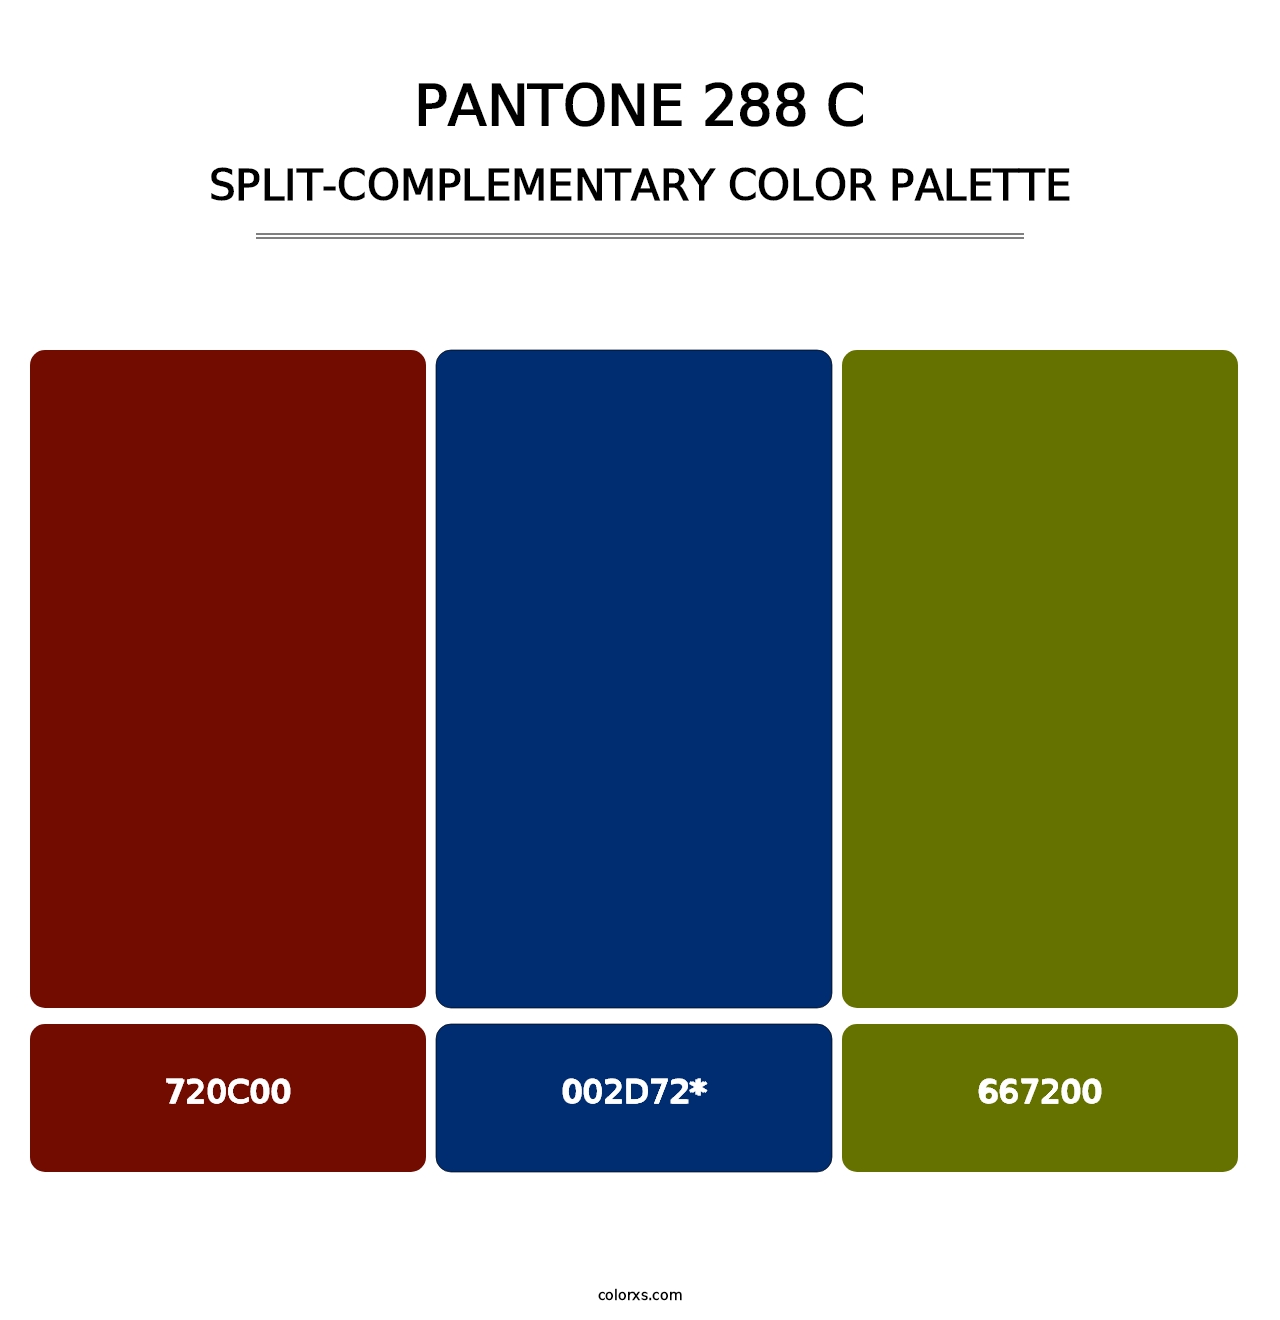 PANTONE 288 C - Split-Complementary Color Palette